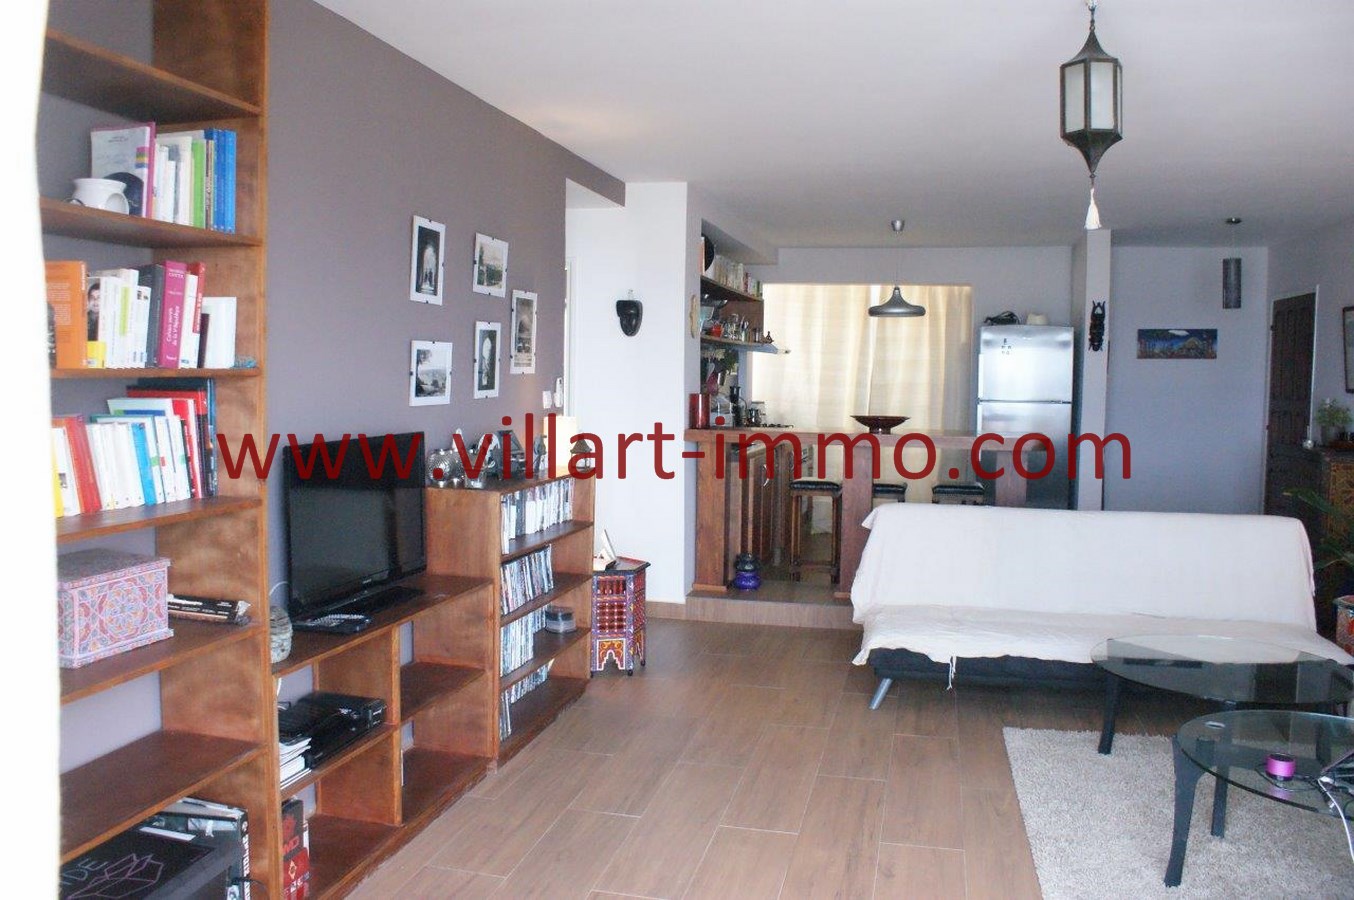 2-Location-Appartement-Meublé-Centre ville-Tanger-Salon 1-L893-Villart immo